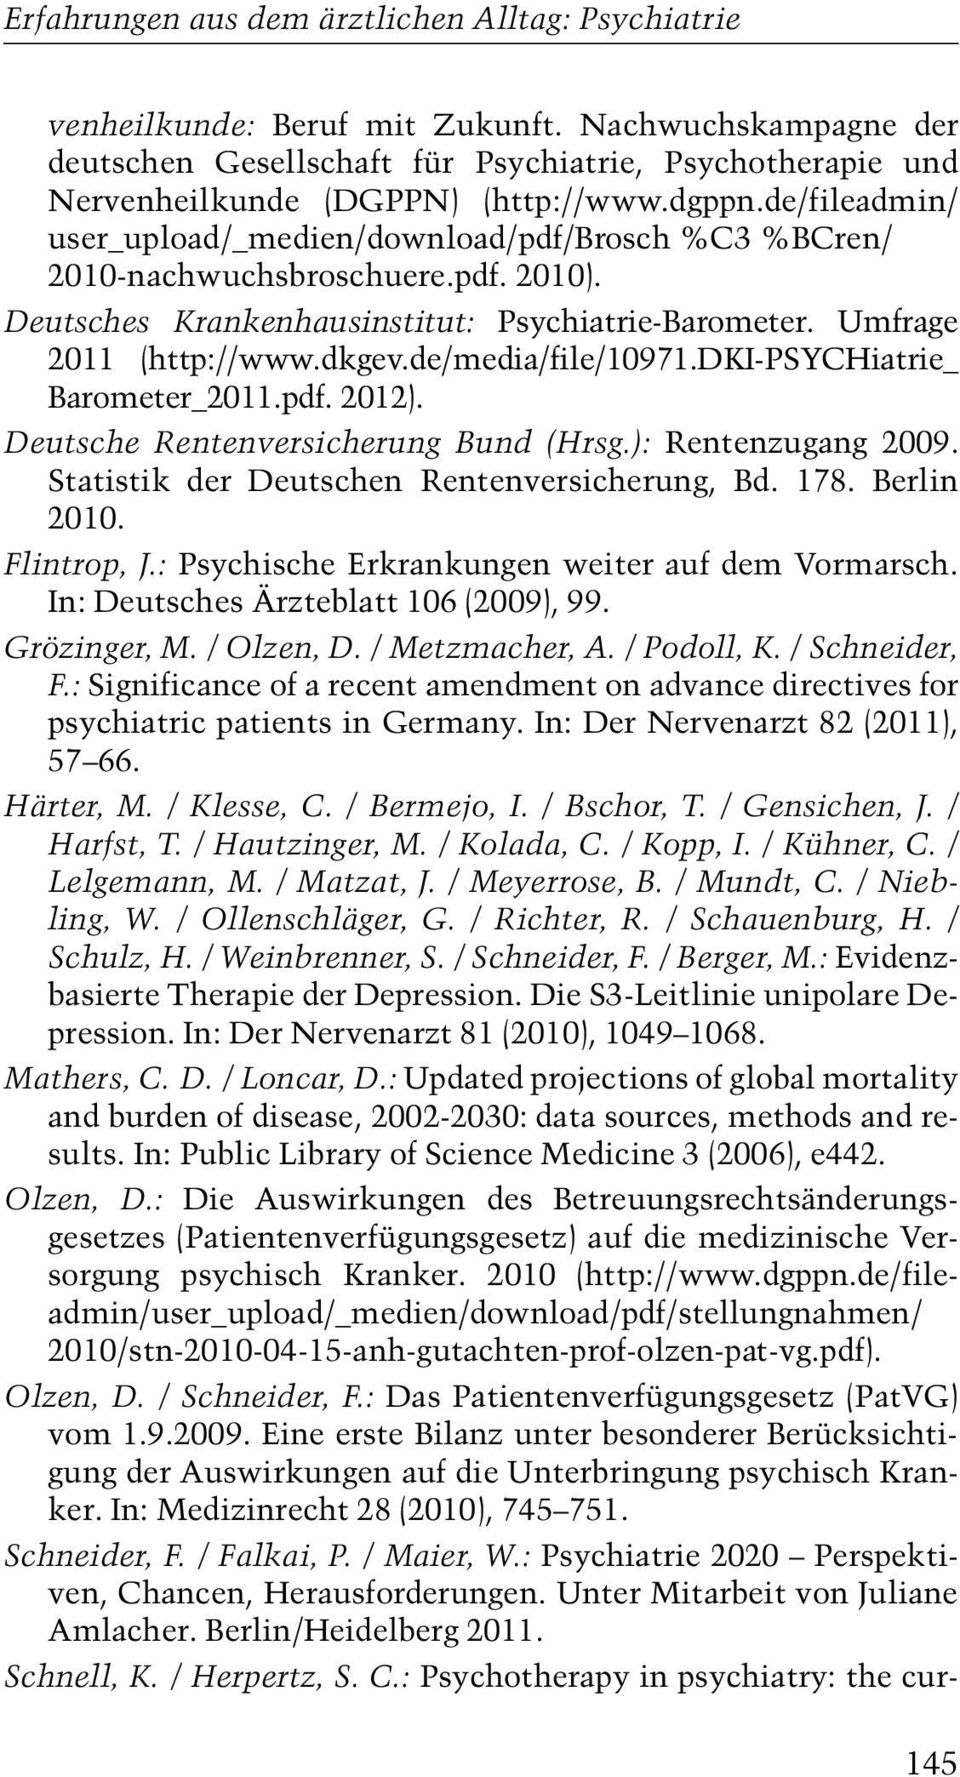 de/fileadmin/ user_upload/_medien/download/pdf/brosch %C3 %BCren/ 2010-nachwuchsbroschuere.pdf. 2010). Deutsches Krankenhausinstitut: Psychiatrie-Barometer. Umfrage 2011 (http://www.dkgev.